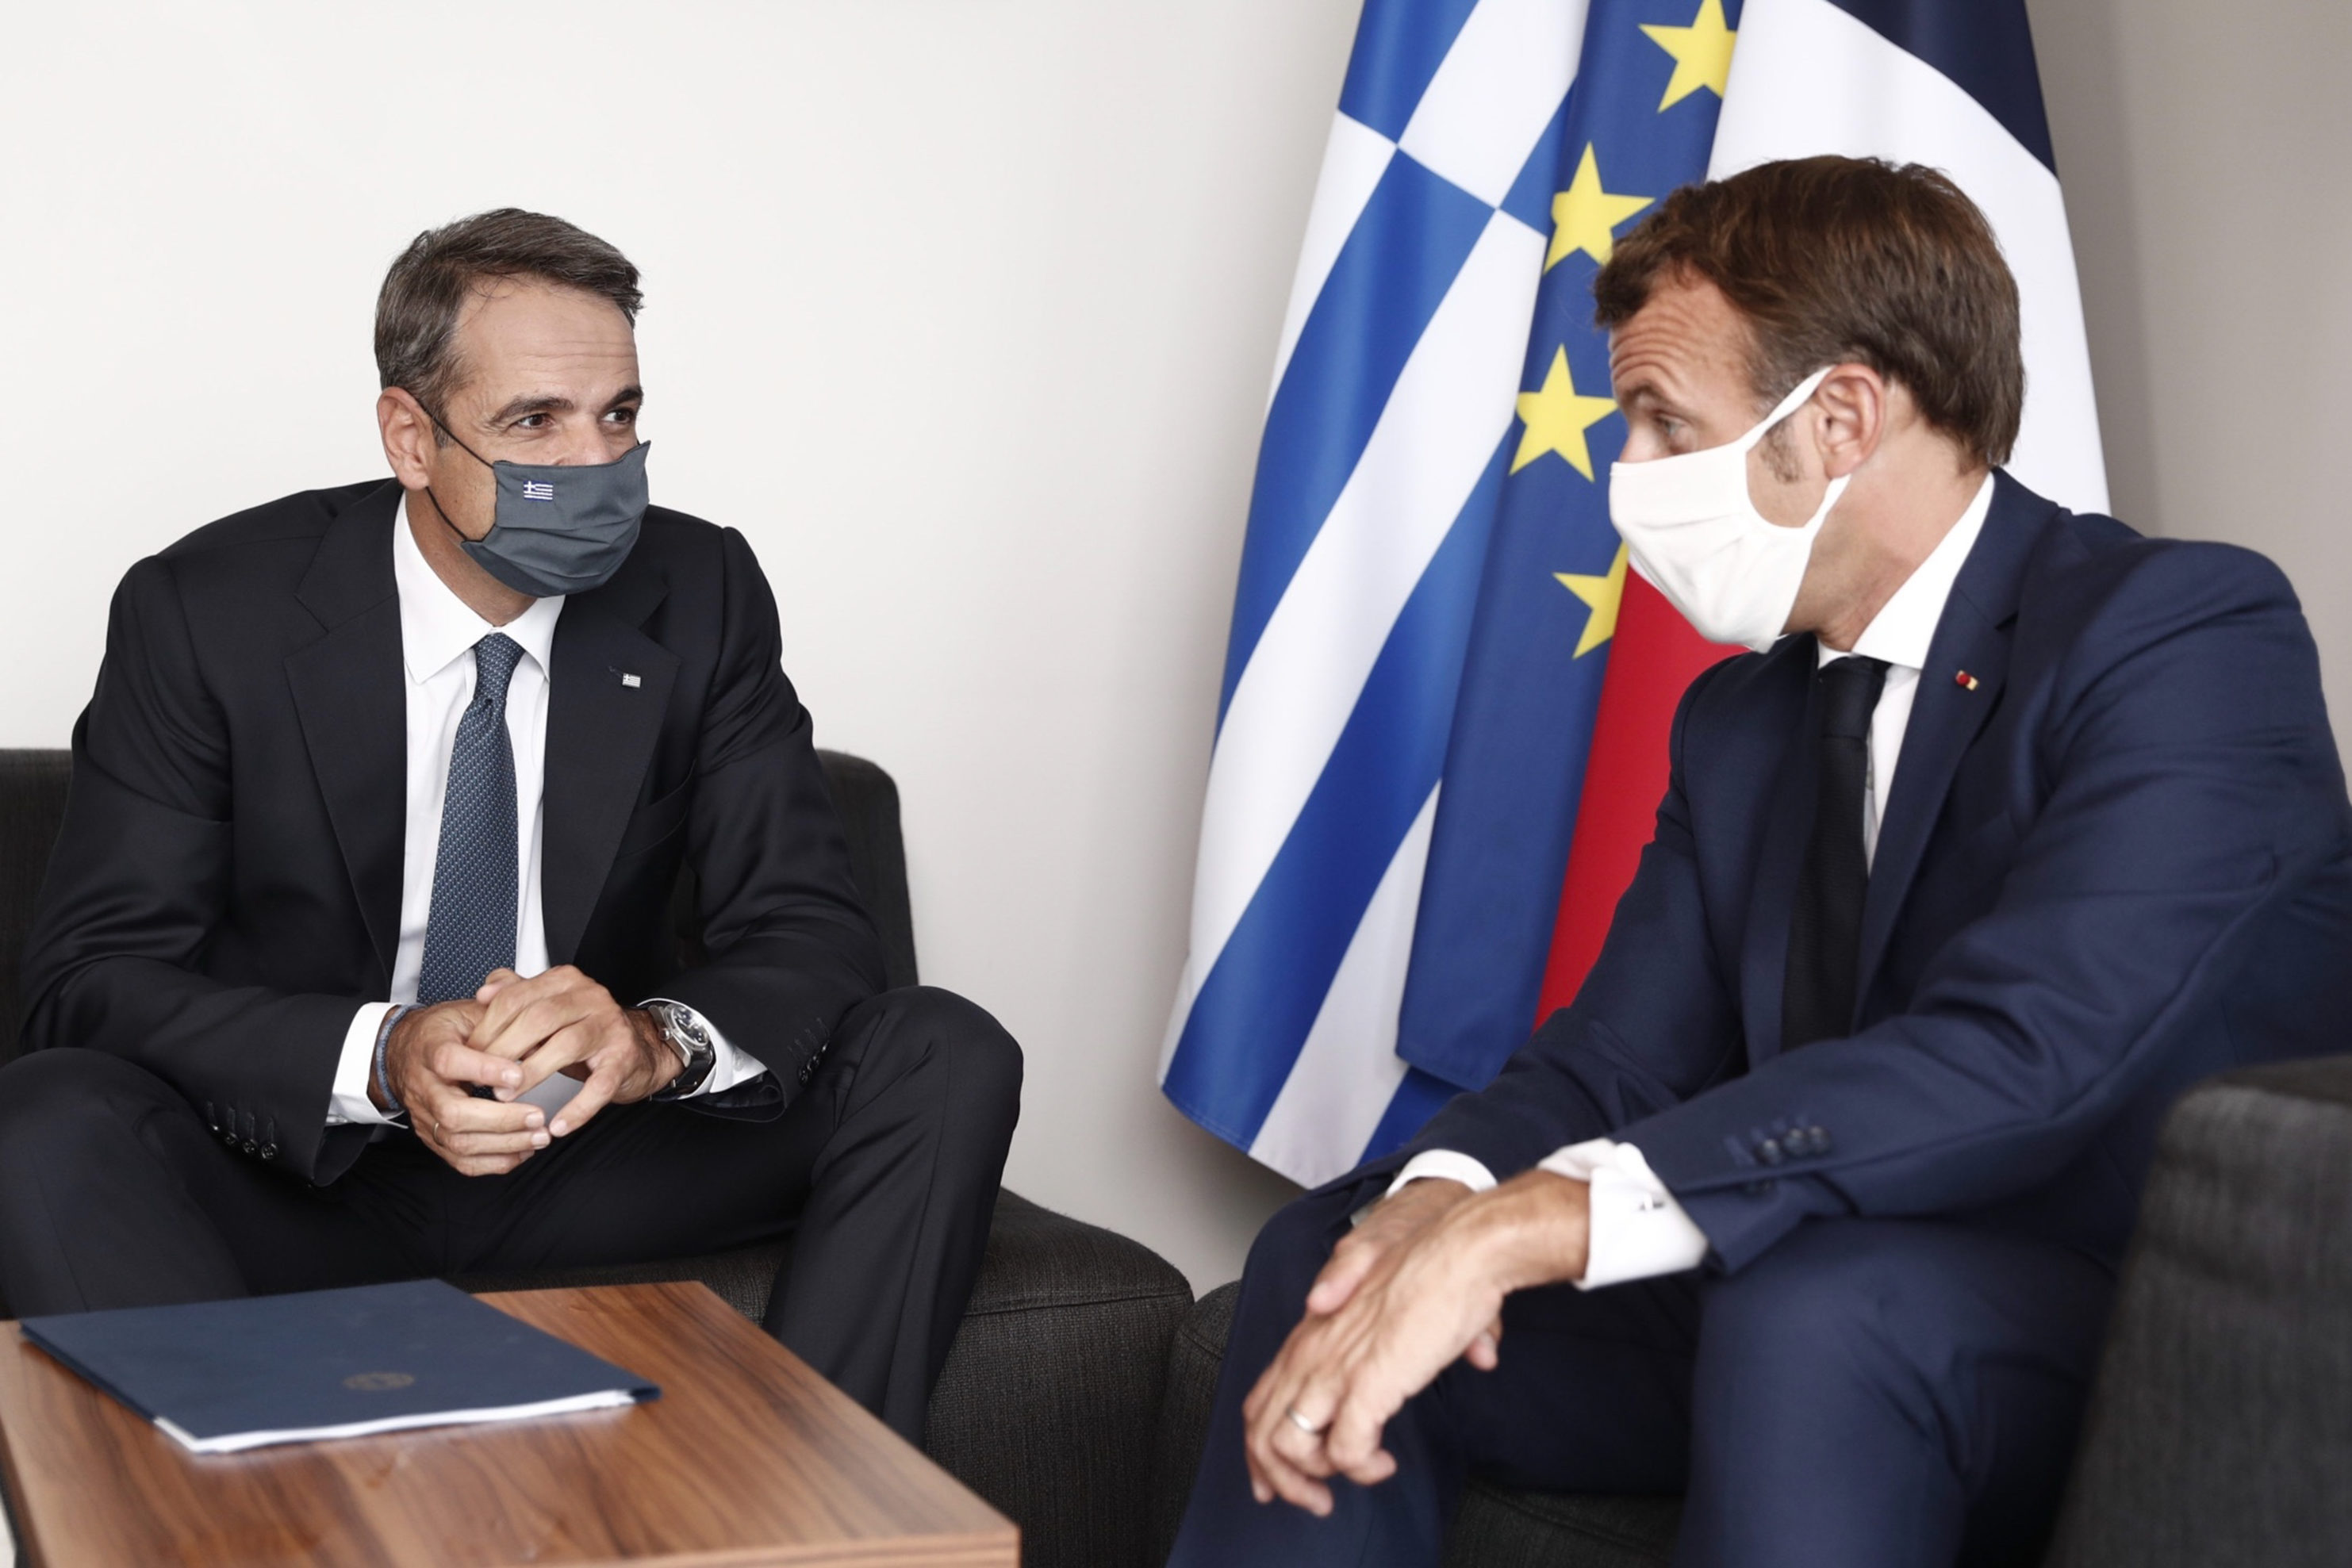 Κυρ. Μητσοτάκης: Ενωμένοι απέναντι στις επιθέσεις της κλιματικής κρίσης – Ελλάδα και Γαλλία δίπλα-δίπλα για την προστασία της ζωής και της φύσης